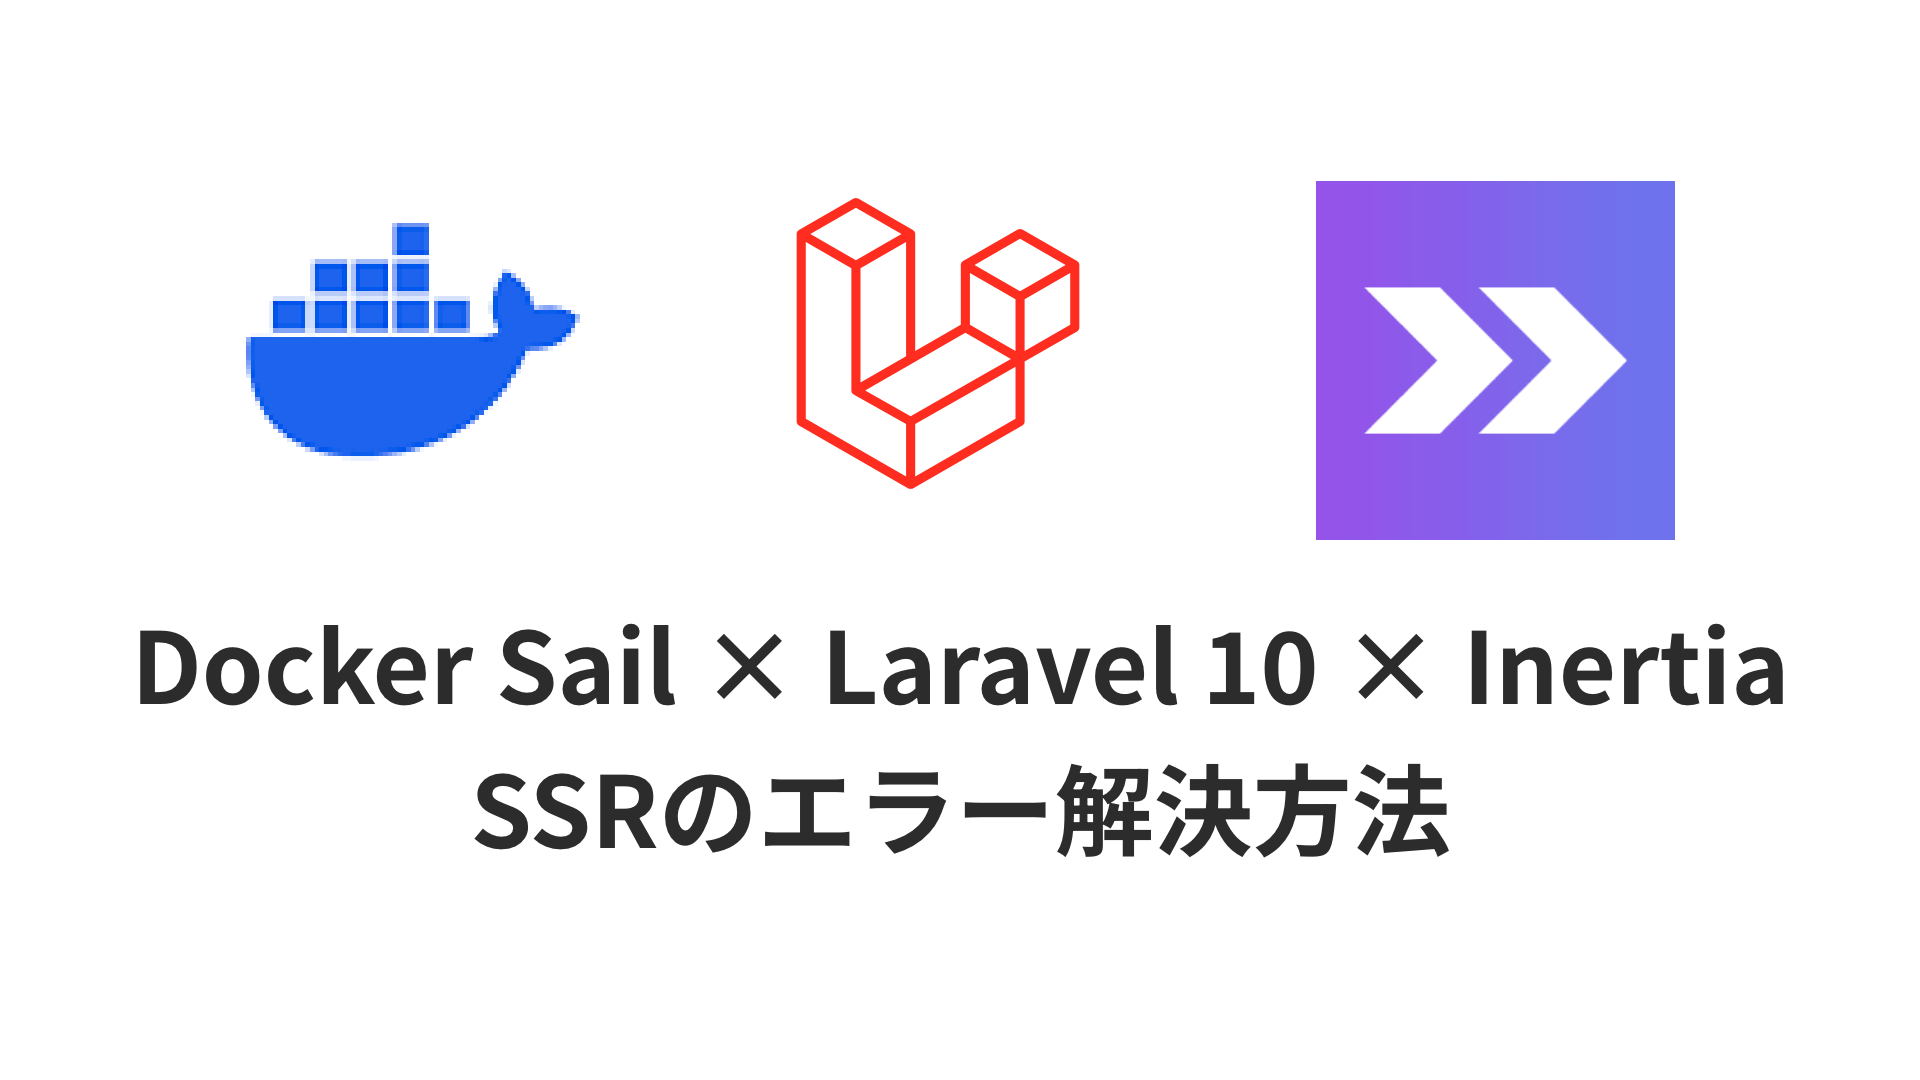 Docker Sail × Laravel 10 × Inertia環境でSSRに対応さたけど、サイトがうまく反映されないという記事のサムネイル画像